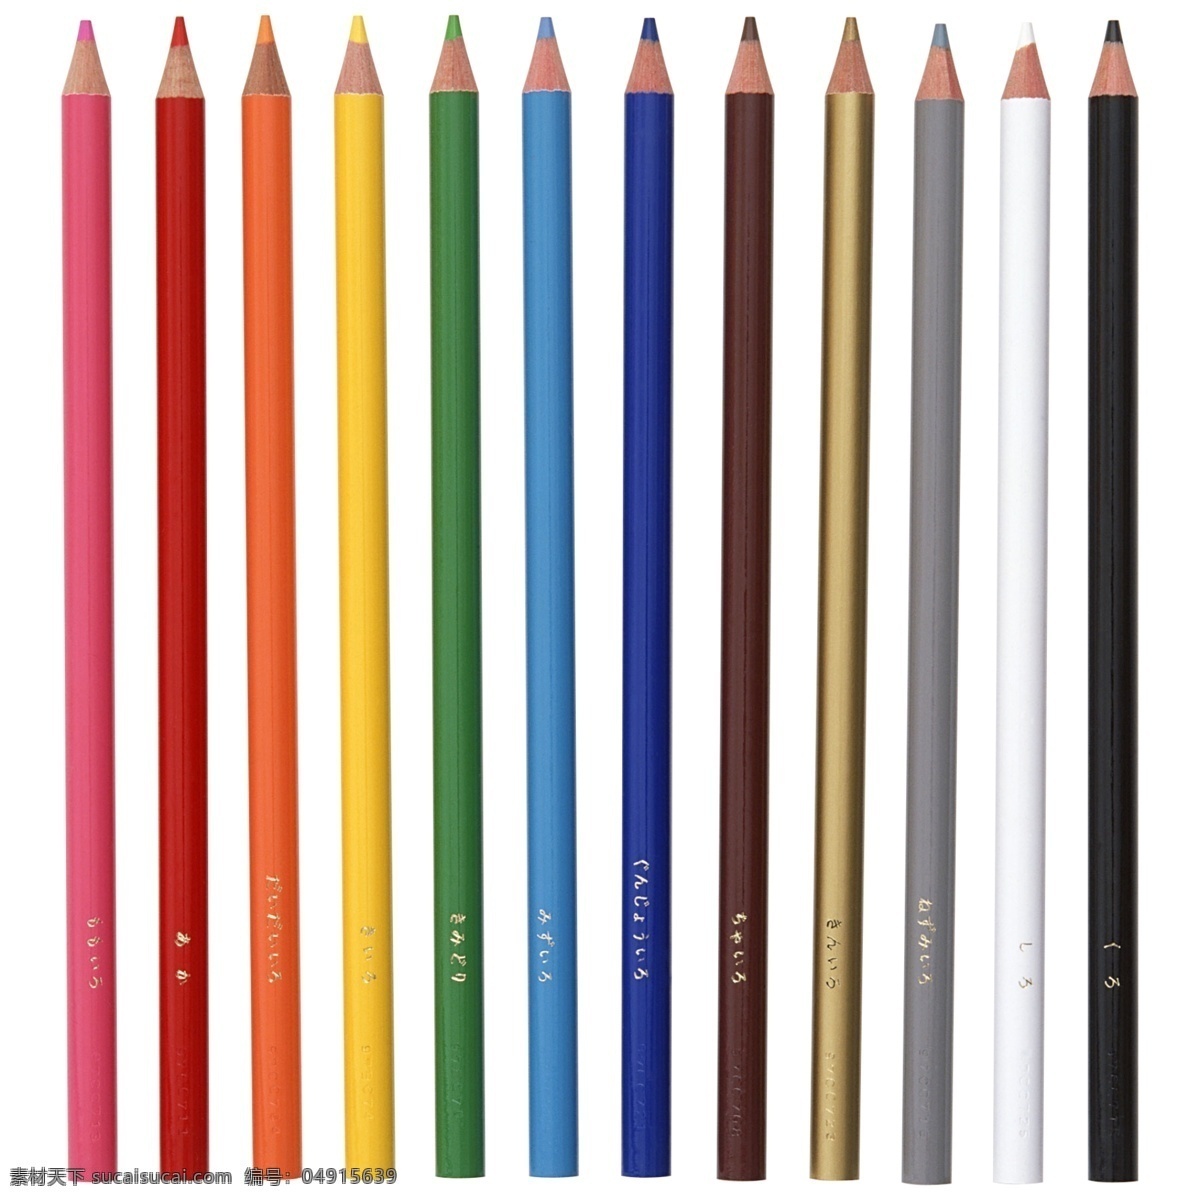 彩色铅笔 铅笔 卡通铅笔 创意铅笔 卡通彩色铅笔 彩色 美术绘画 卡通 铅笔头 绘图笔 彩笔 画笔 文具 学习办公 学习用品 办公用品 蓝色铅笔 生活百科 白色背景 背景分层 分层